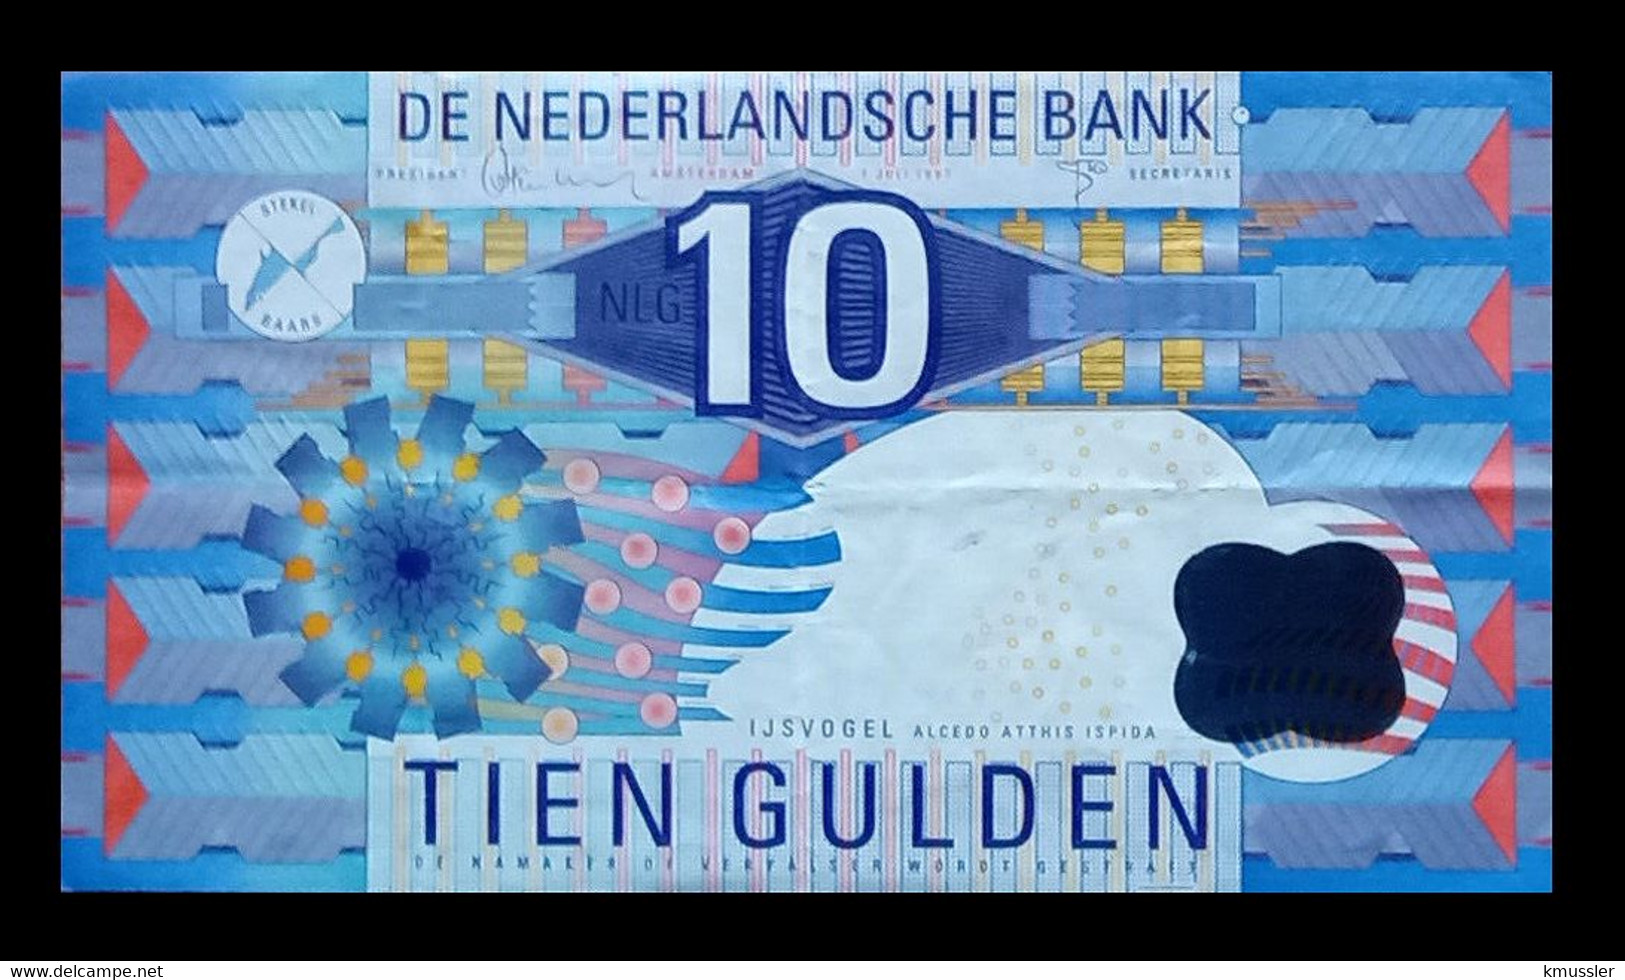 # # # Banknote Niederlande (Netherlands) 10 Gulden # # # - 10 Florín Holandés (gulden)